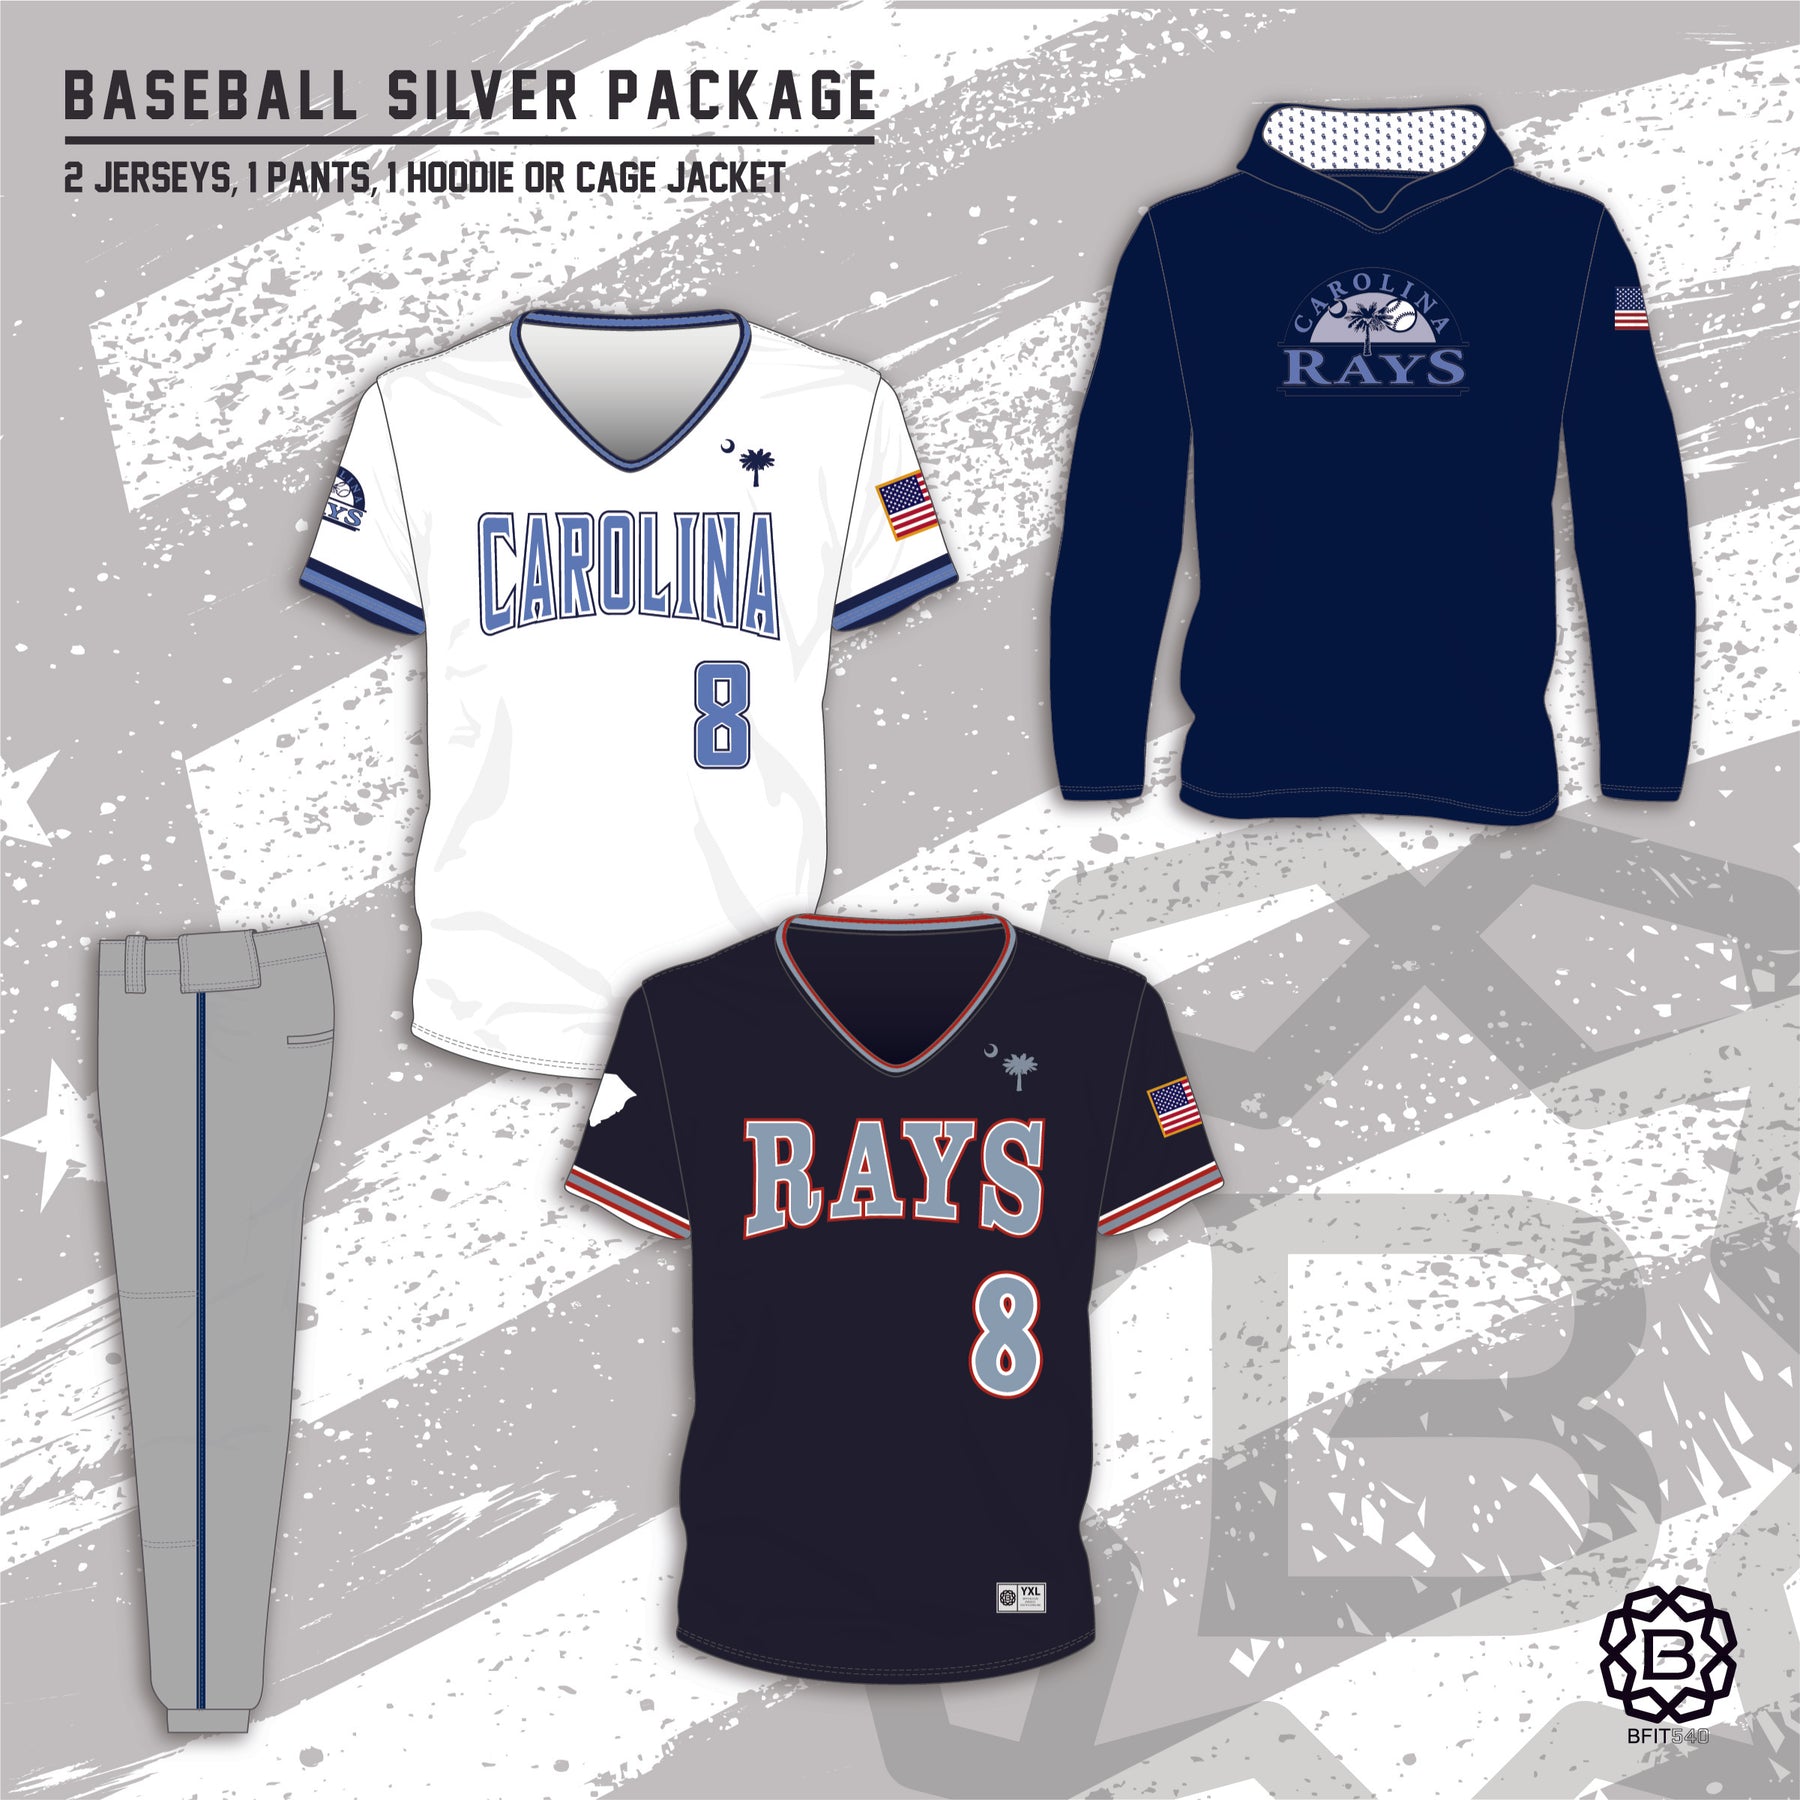 Order Custom Baseball Uniforms & Custom Baseball Jerseys